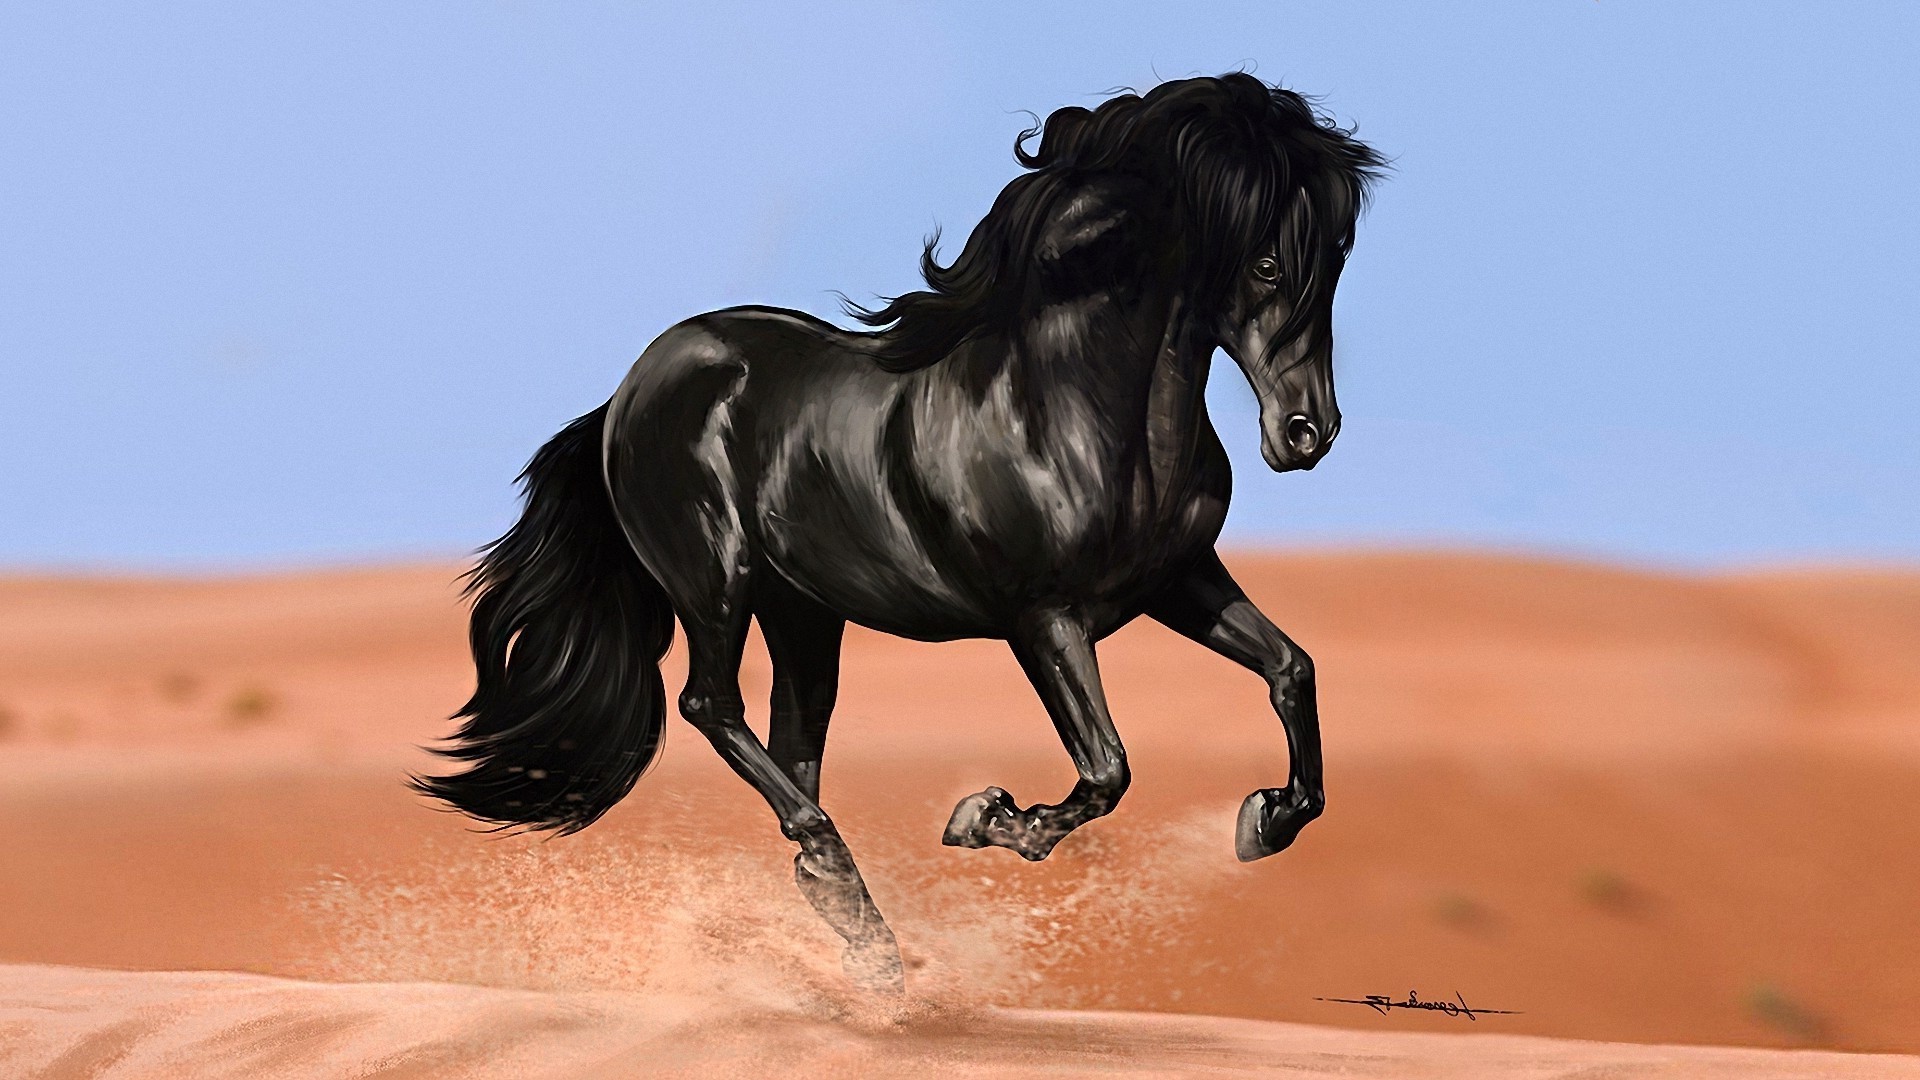 лошади лошадь млекопитающее конница маре один конный конкурс гонки коневодство жеребец на открытом воздухе действие